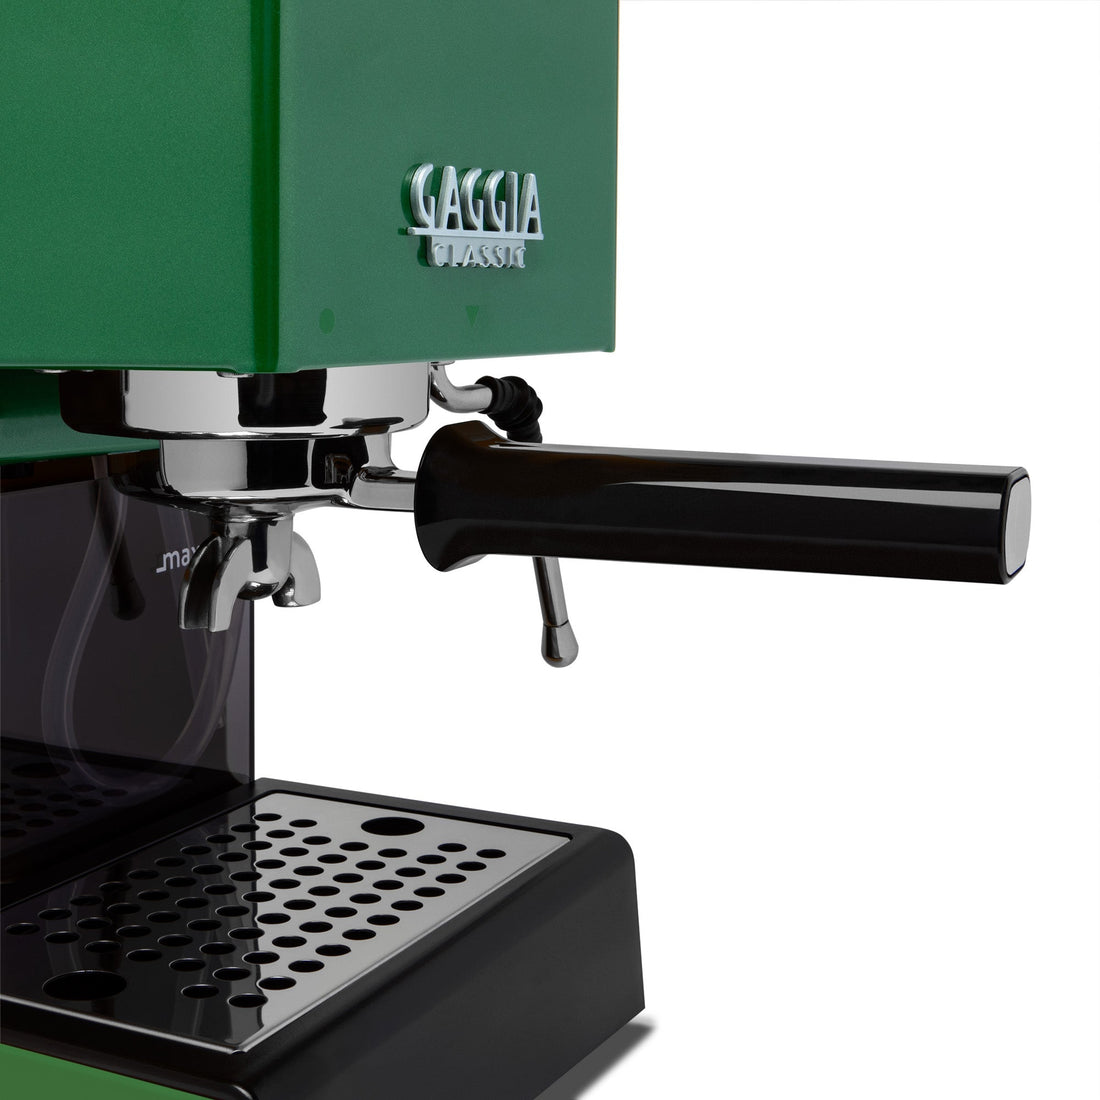 Gaggia Classic Evo Pro Espresso Machine in Jungle Green with Olive Wood